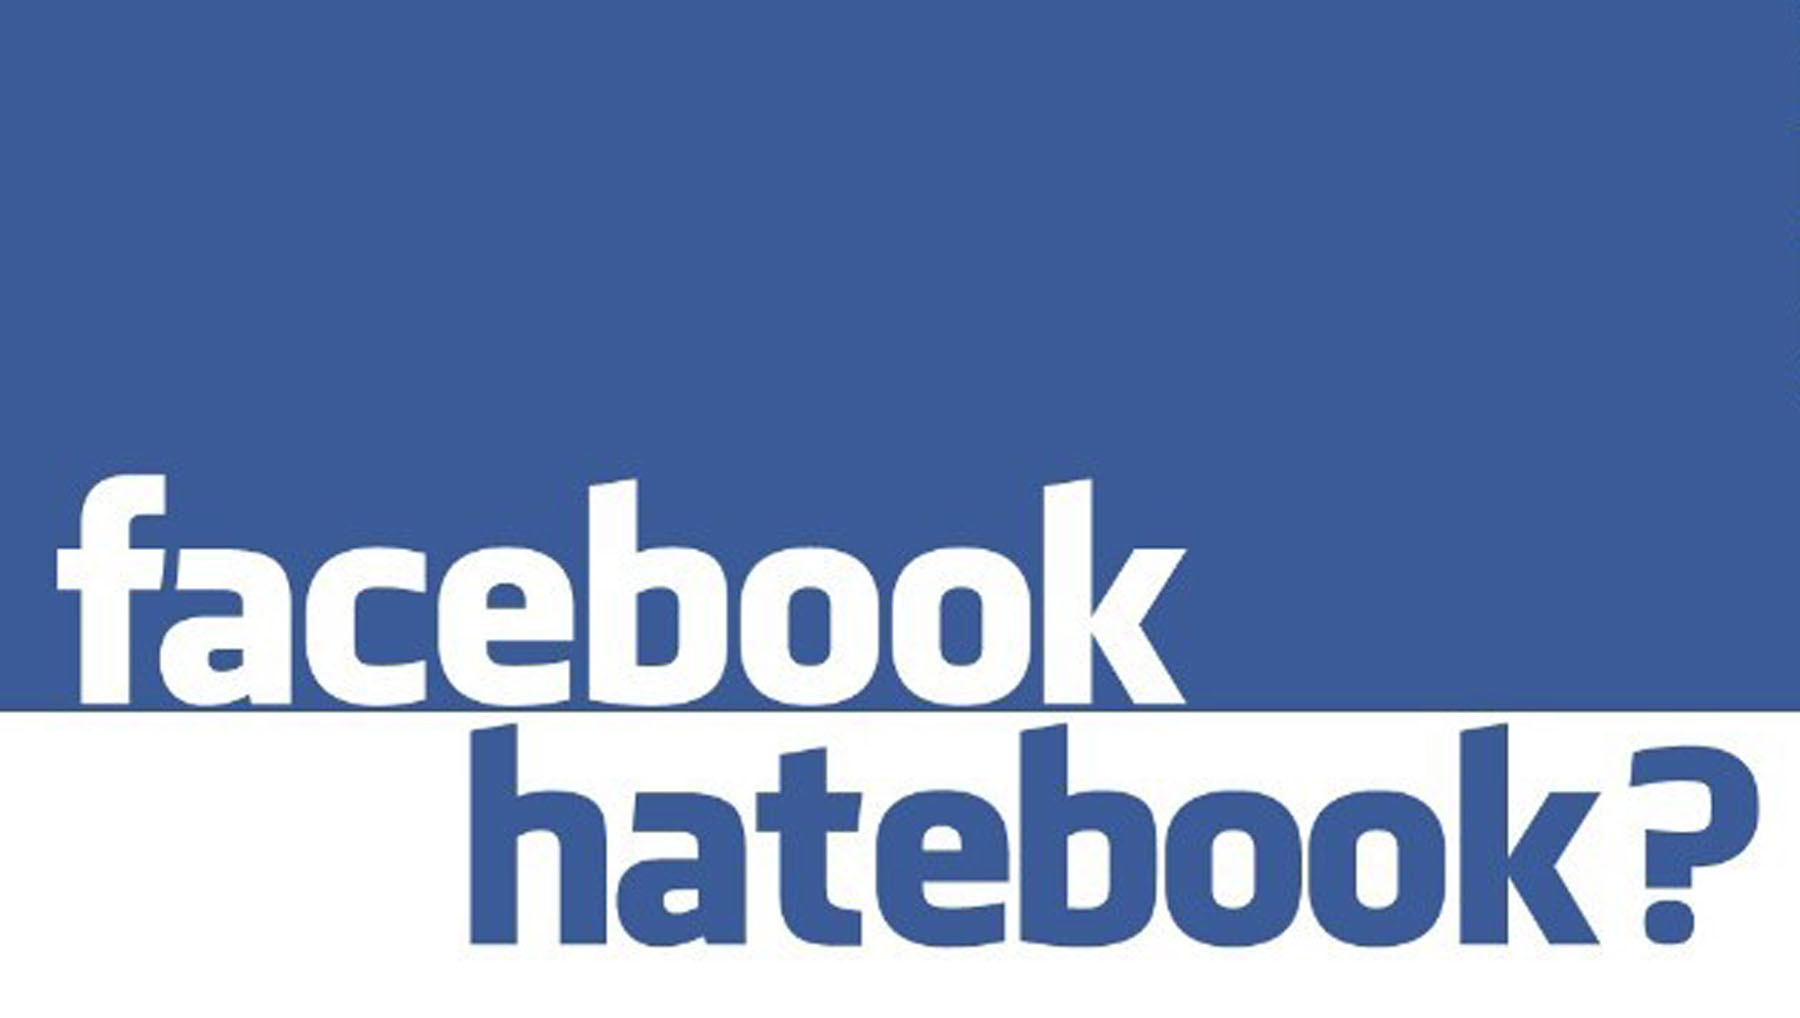  पूरी दुनिया से फेसबुक अपने प्लेटफॉर्म पर मौजूद नफरती सामग्री हटाए : यूरोपीय यूनियन सर्वोच्च अदालत का आदेश।